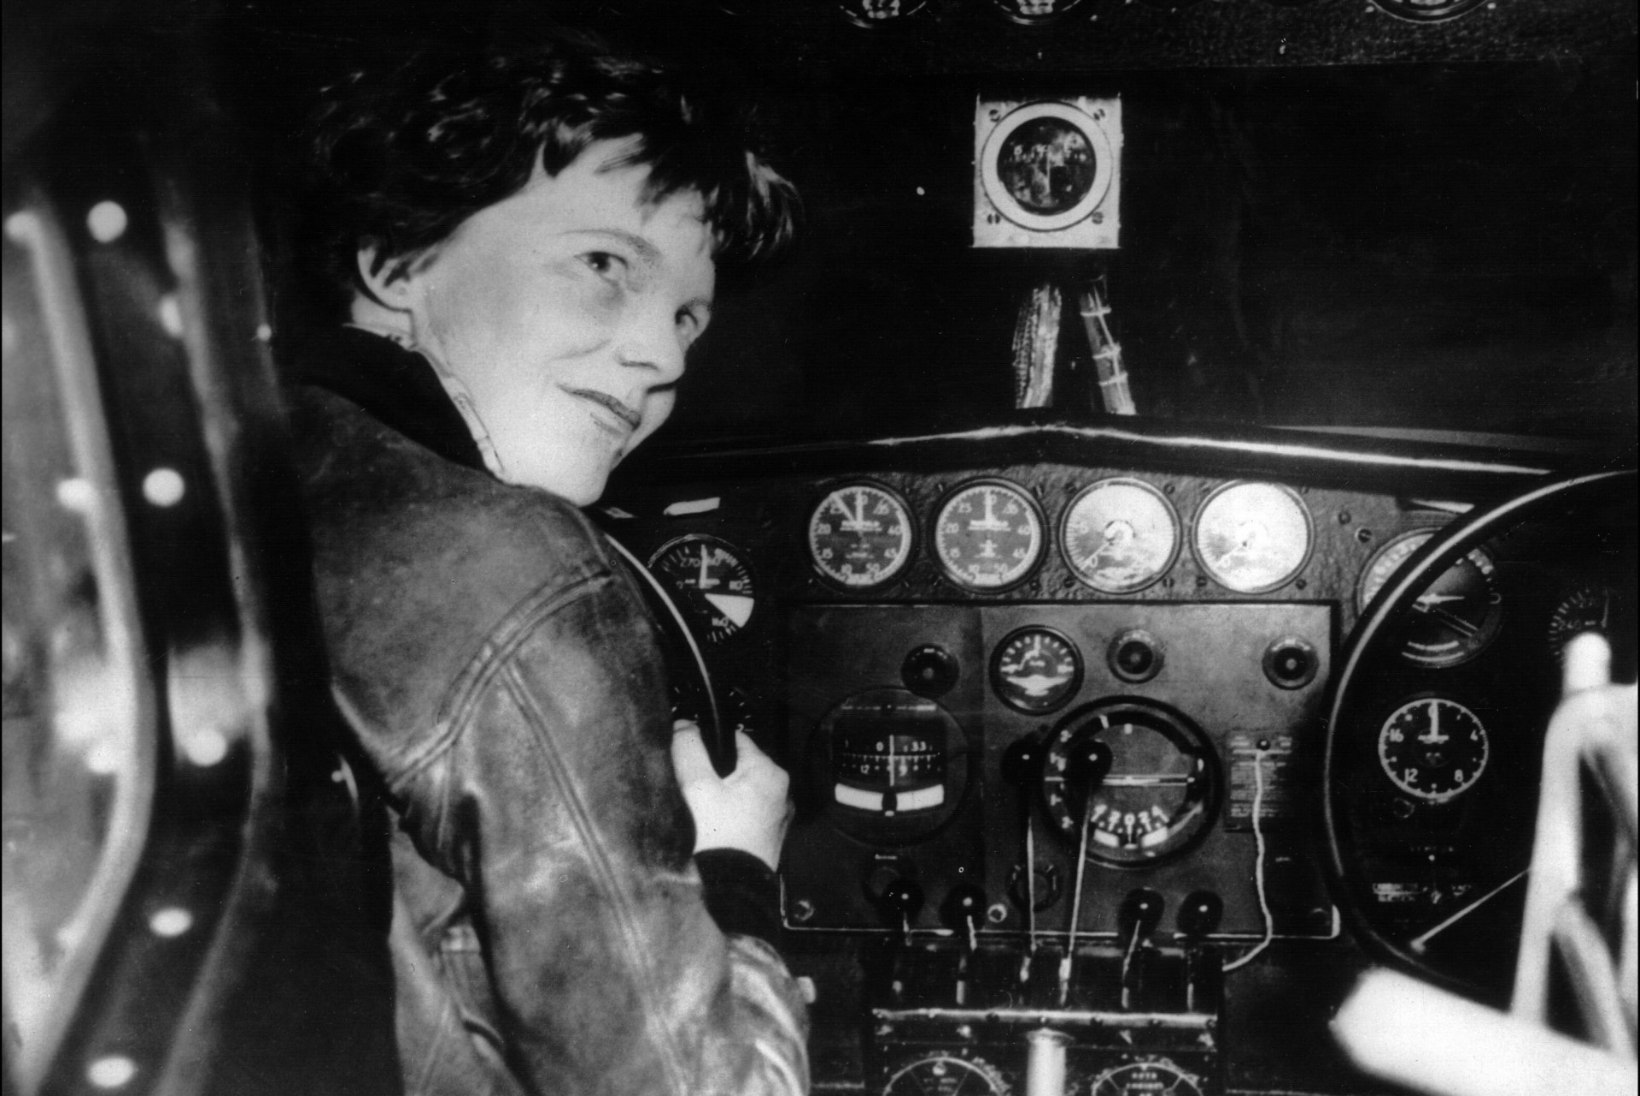 Gardneri saarelt leitud skelett võib kuuluda naislendur Amelia Earhartile